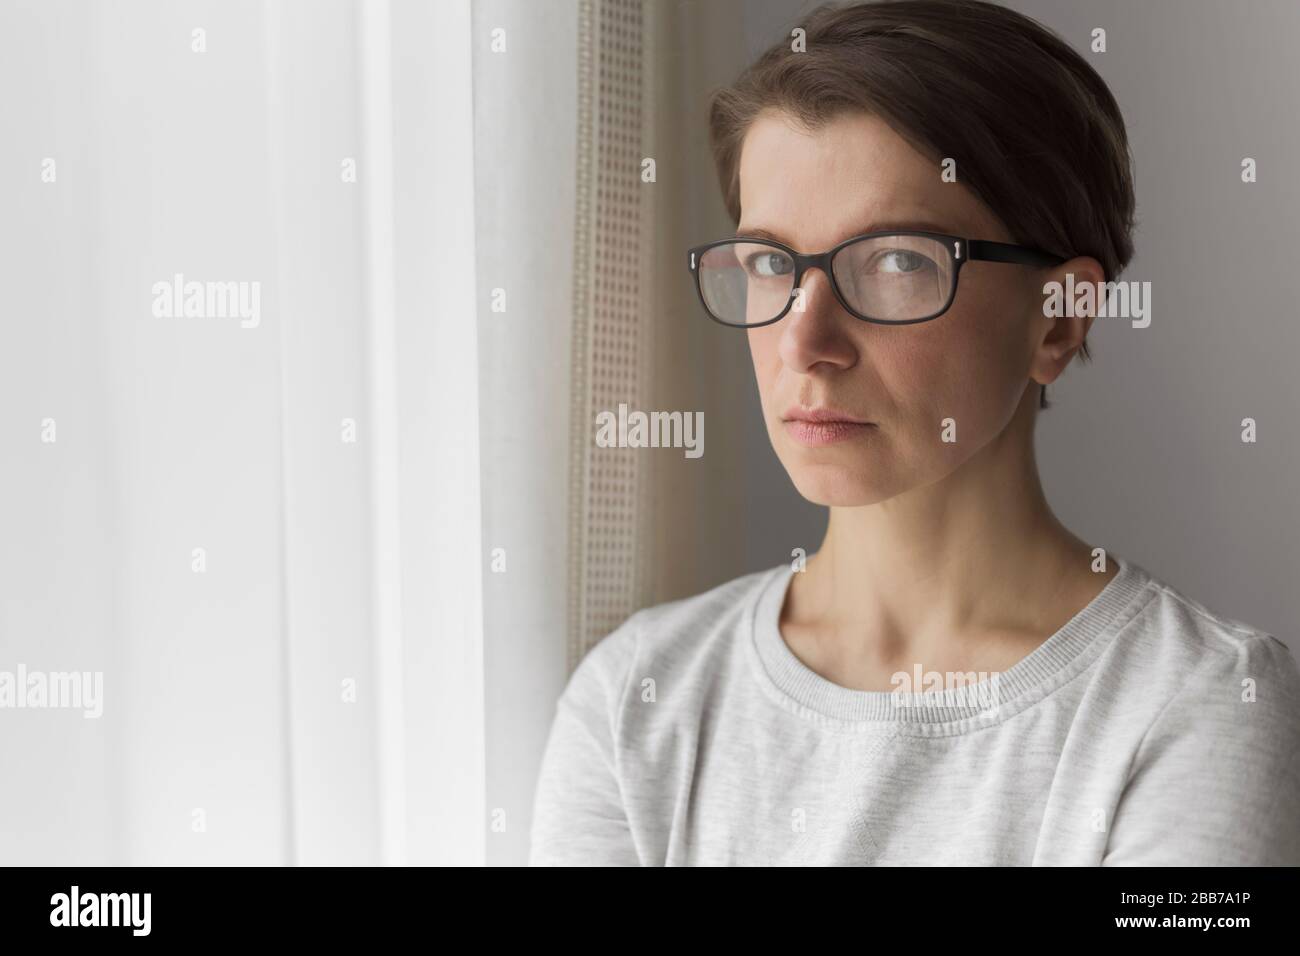 Ritratto di una donna penosa e triste con occhiali. Foto Stock